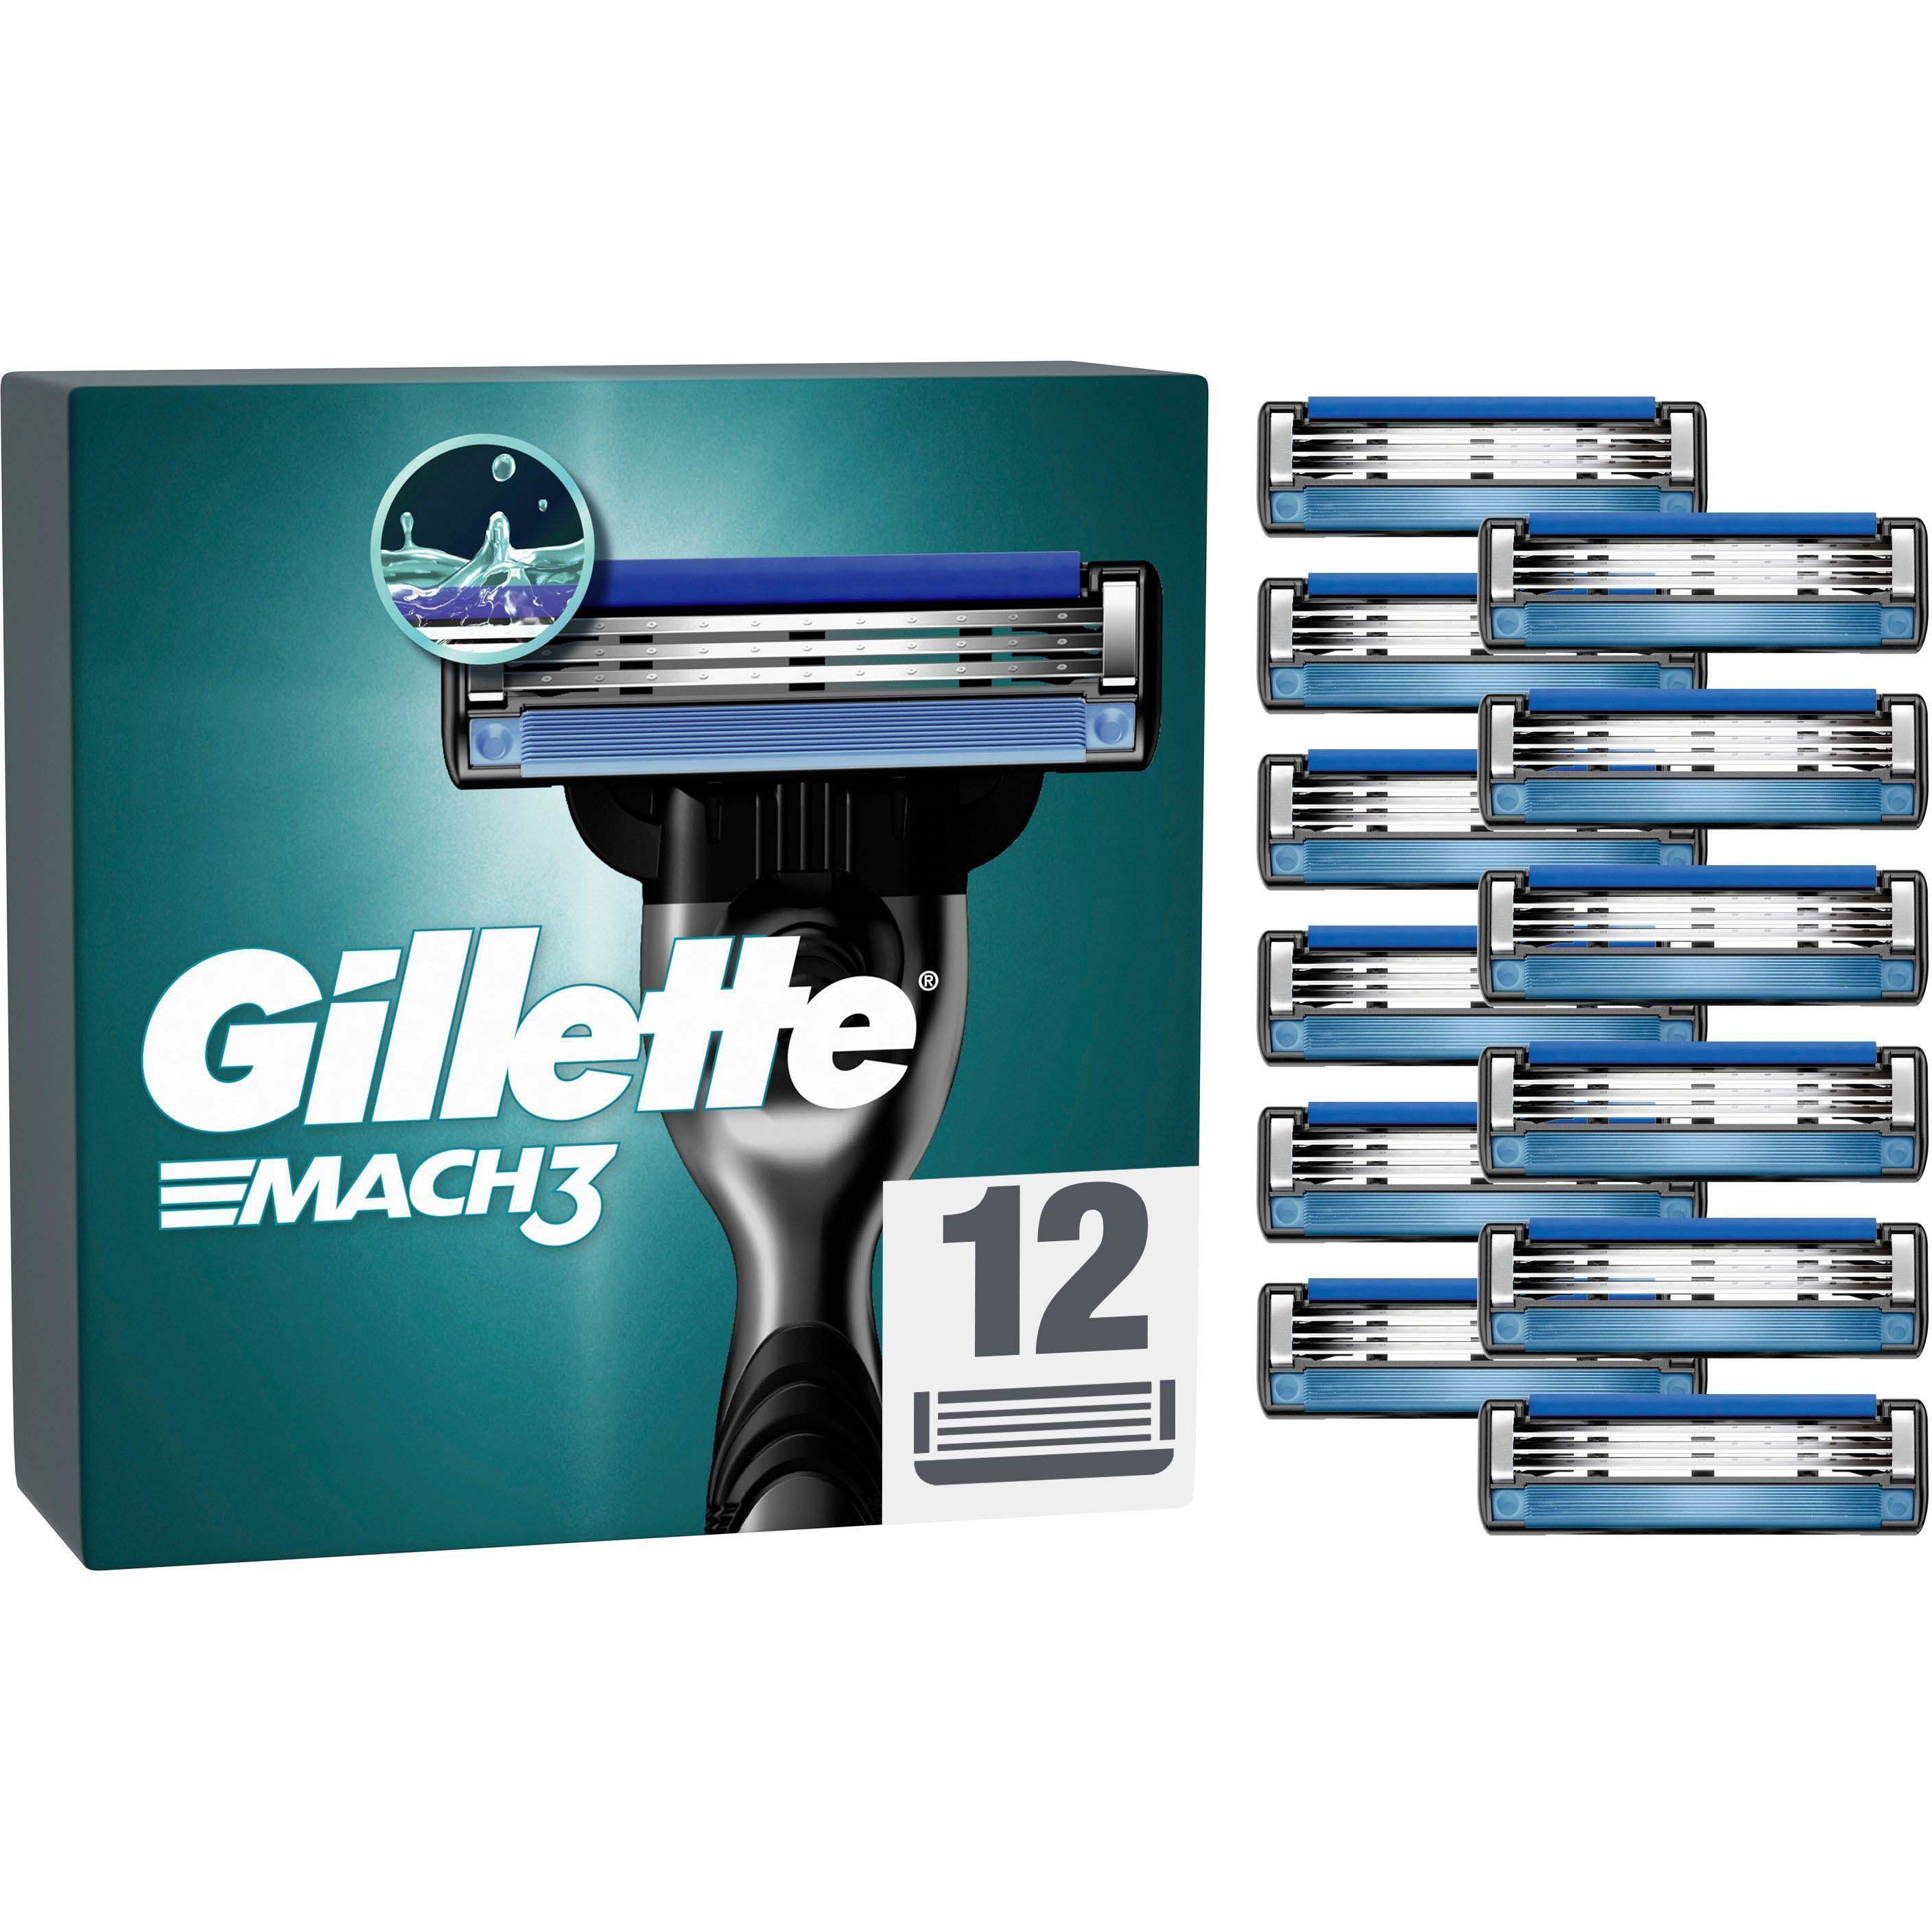 Bilde av Gillette Mach3 Razor Blades For Men 12 Count